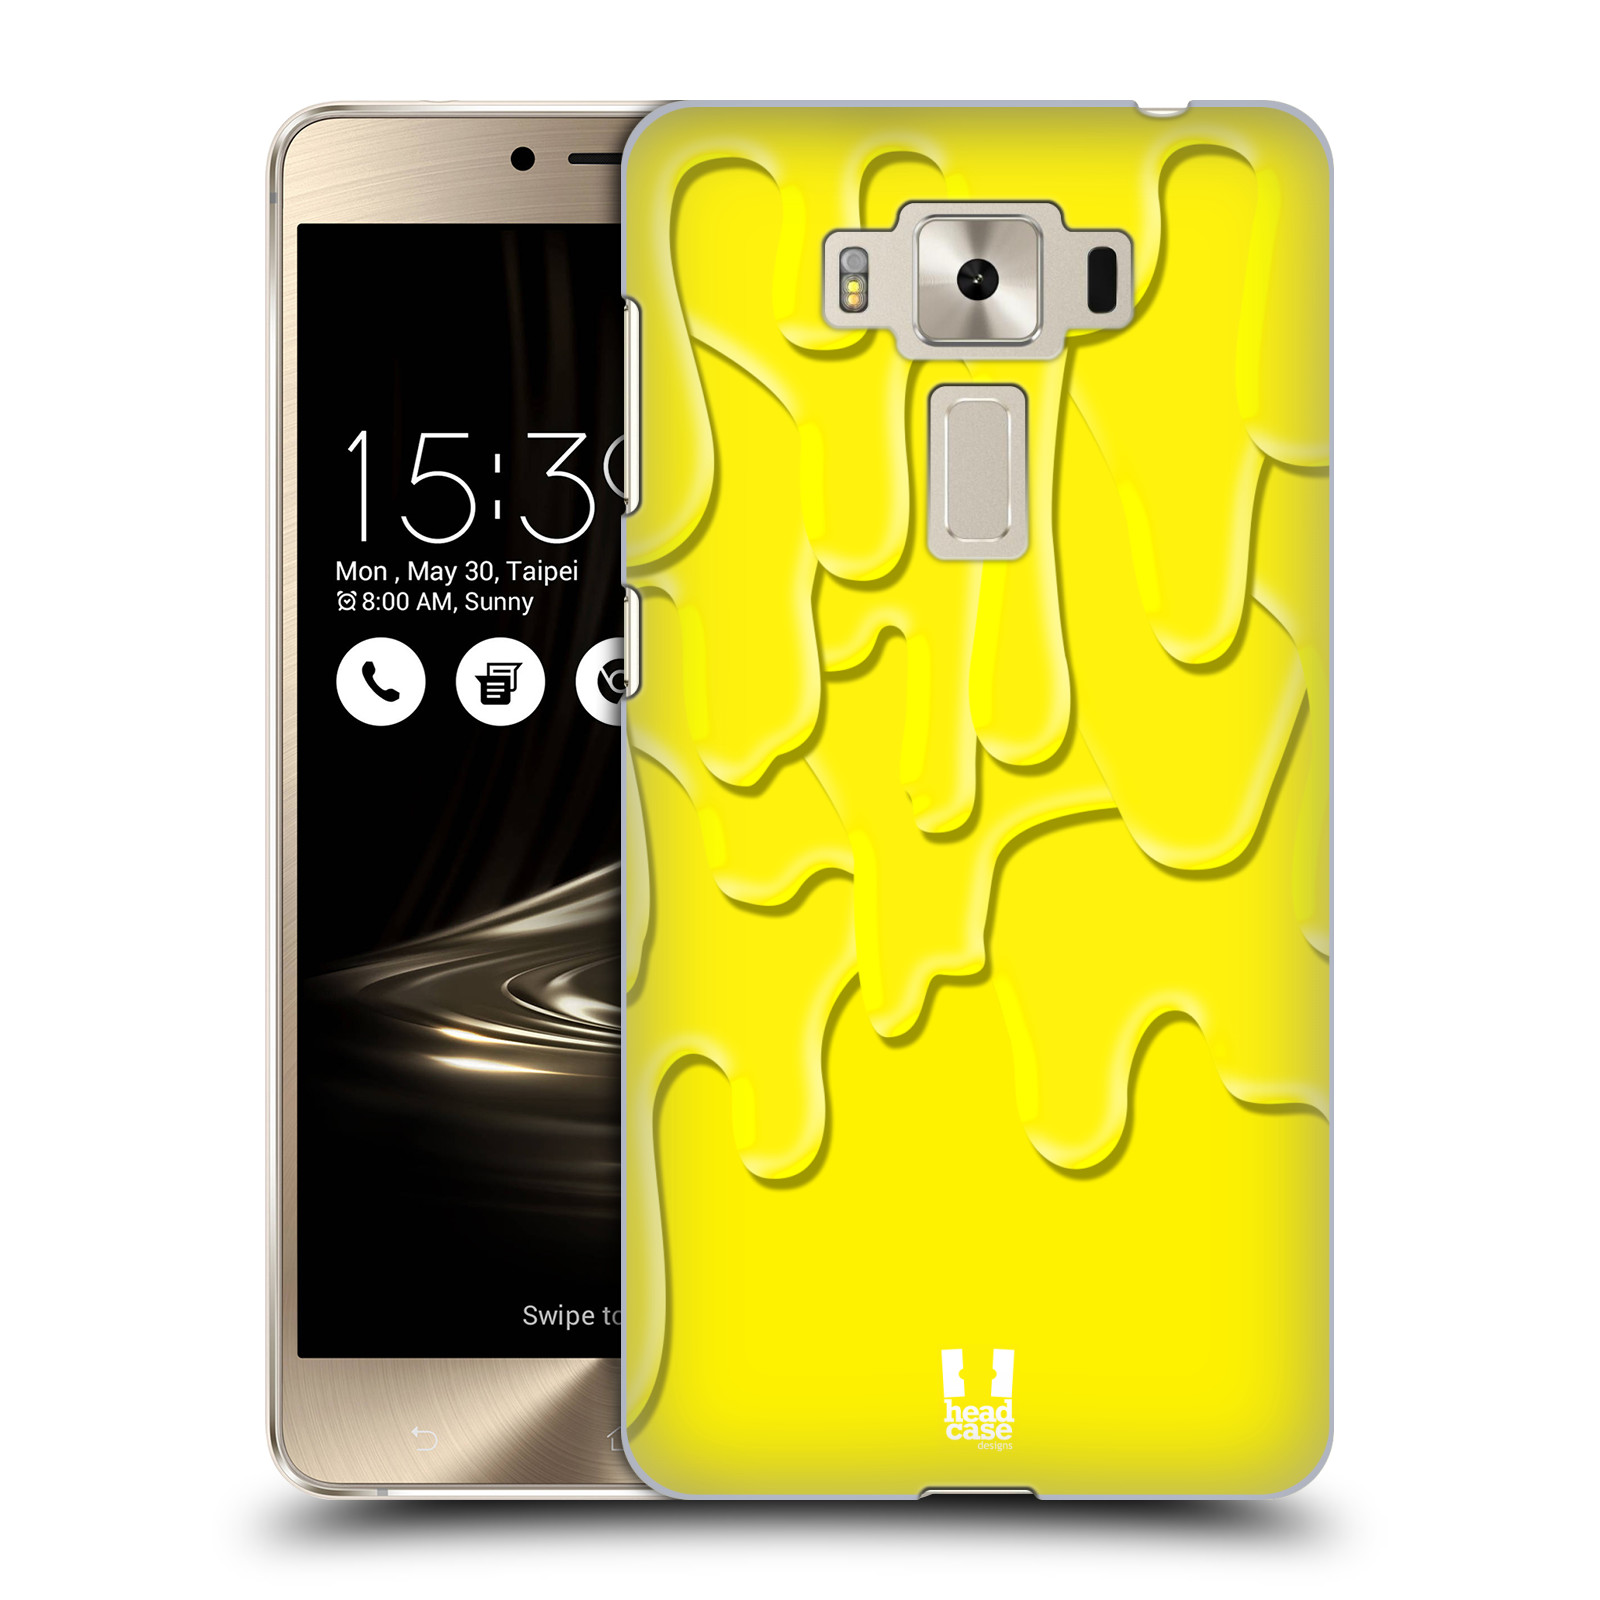 HEAD CASE plastový obal na mobil Asus Zenfone 3 DELUXE ZS550KL vzor Barevná záplava žlutá